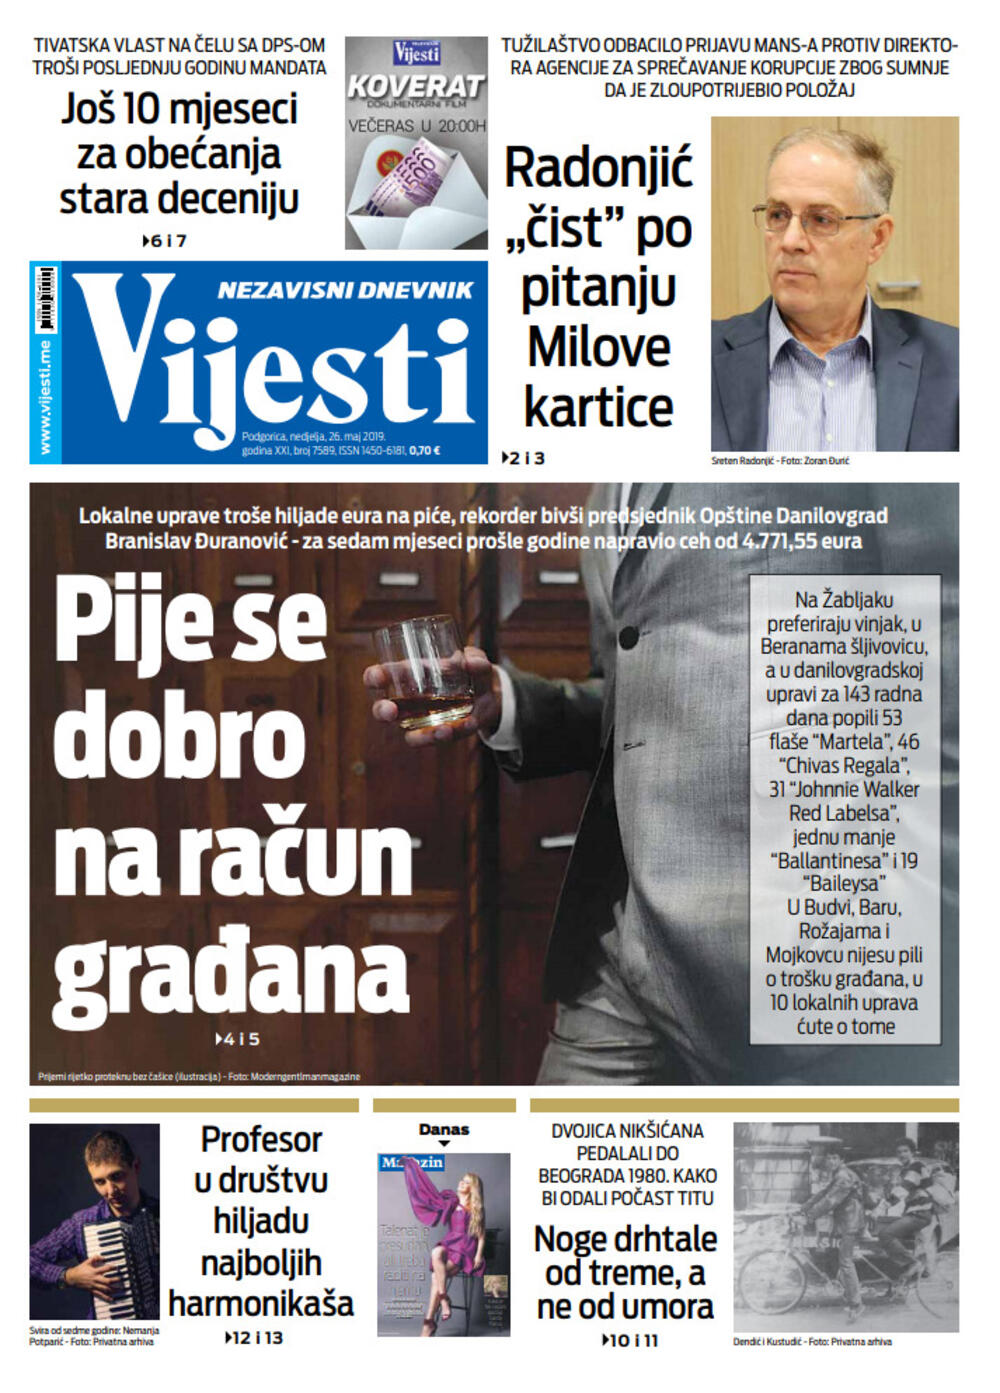 Naslovna strana "Vijesti" za 26. maj, Foto: Vijesti